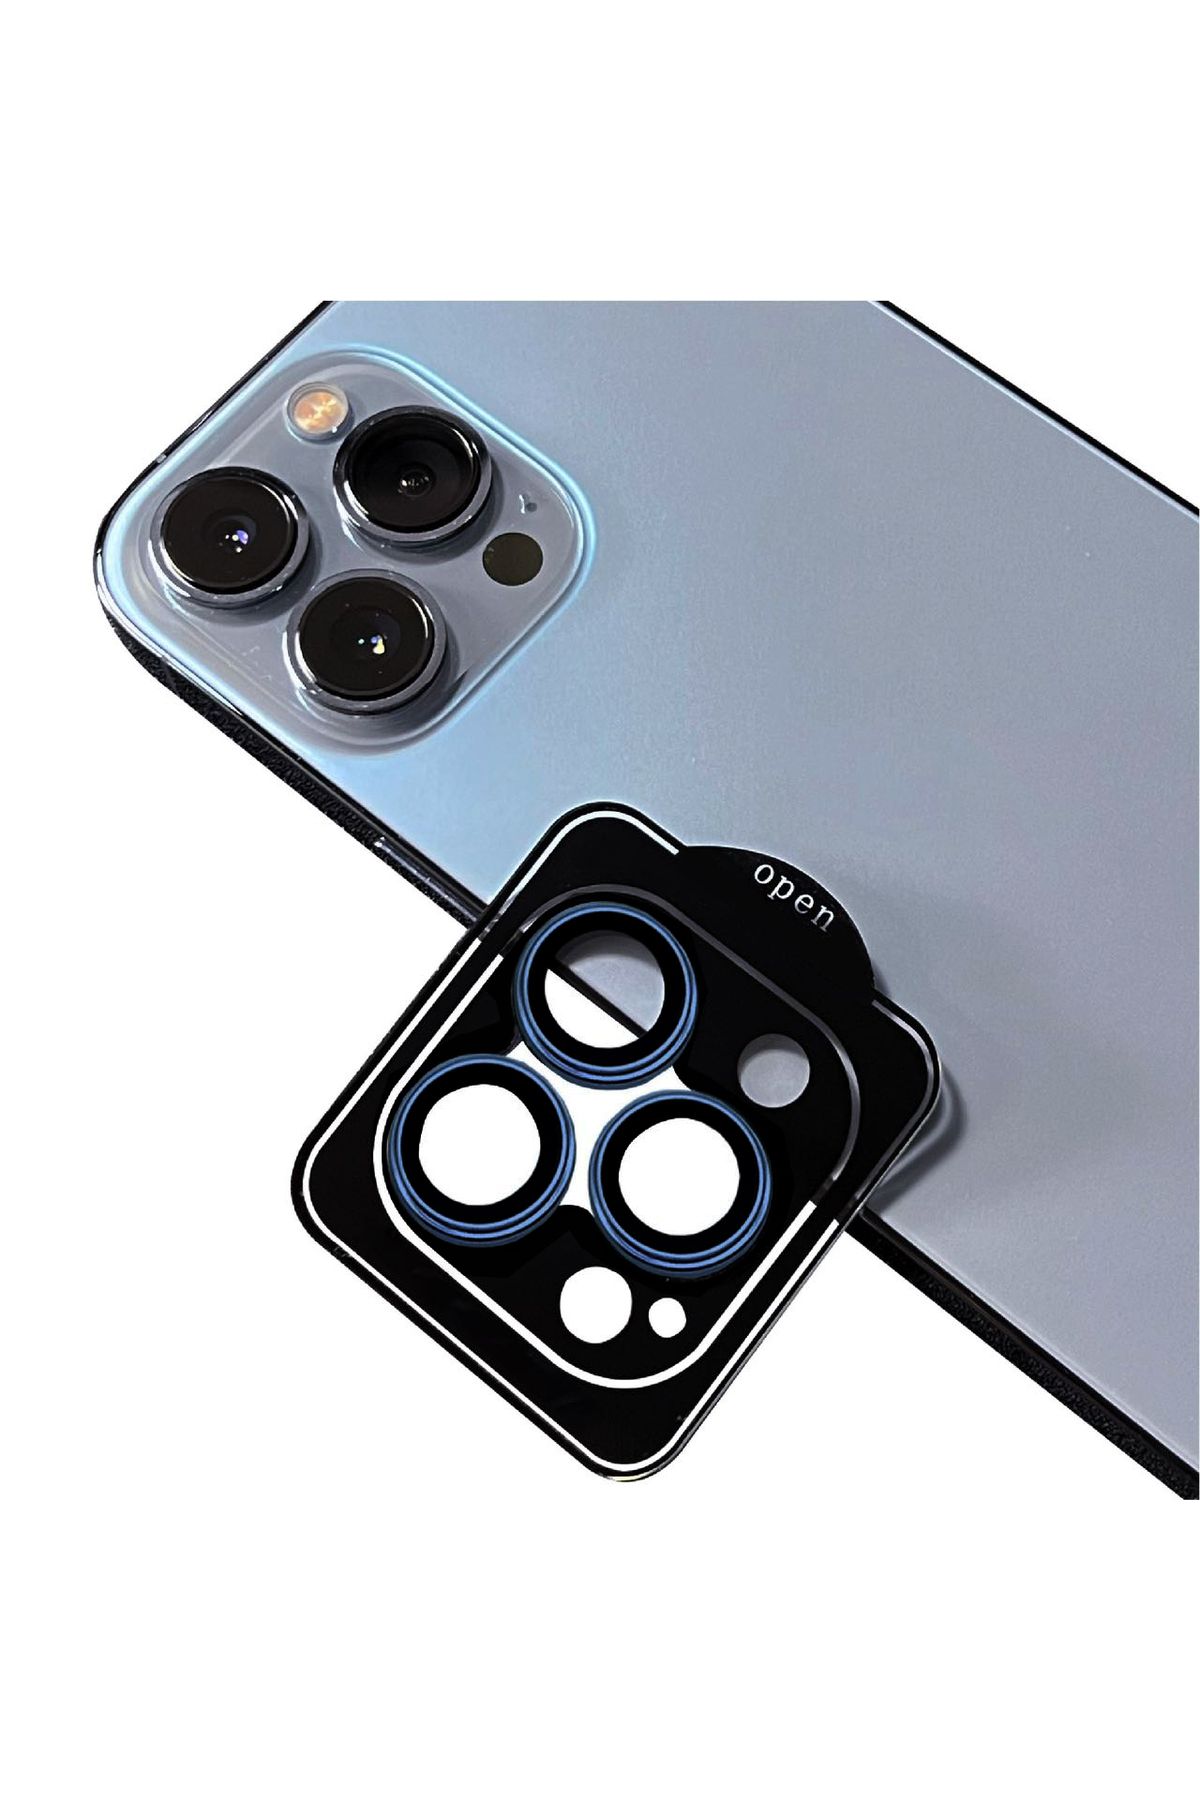 Zore iPhone 11 Pro Max Uyumlu CL-11 Safir Parmak İzi Bırakmayan Anti-Reflective Kamera Lens Koruyucu